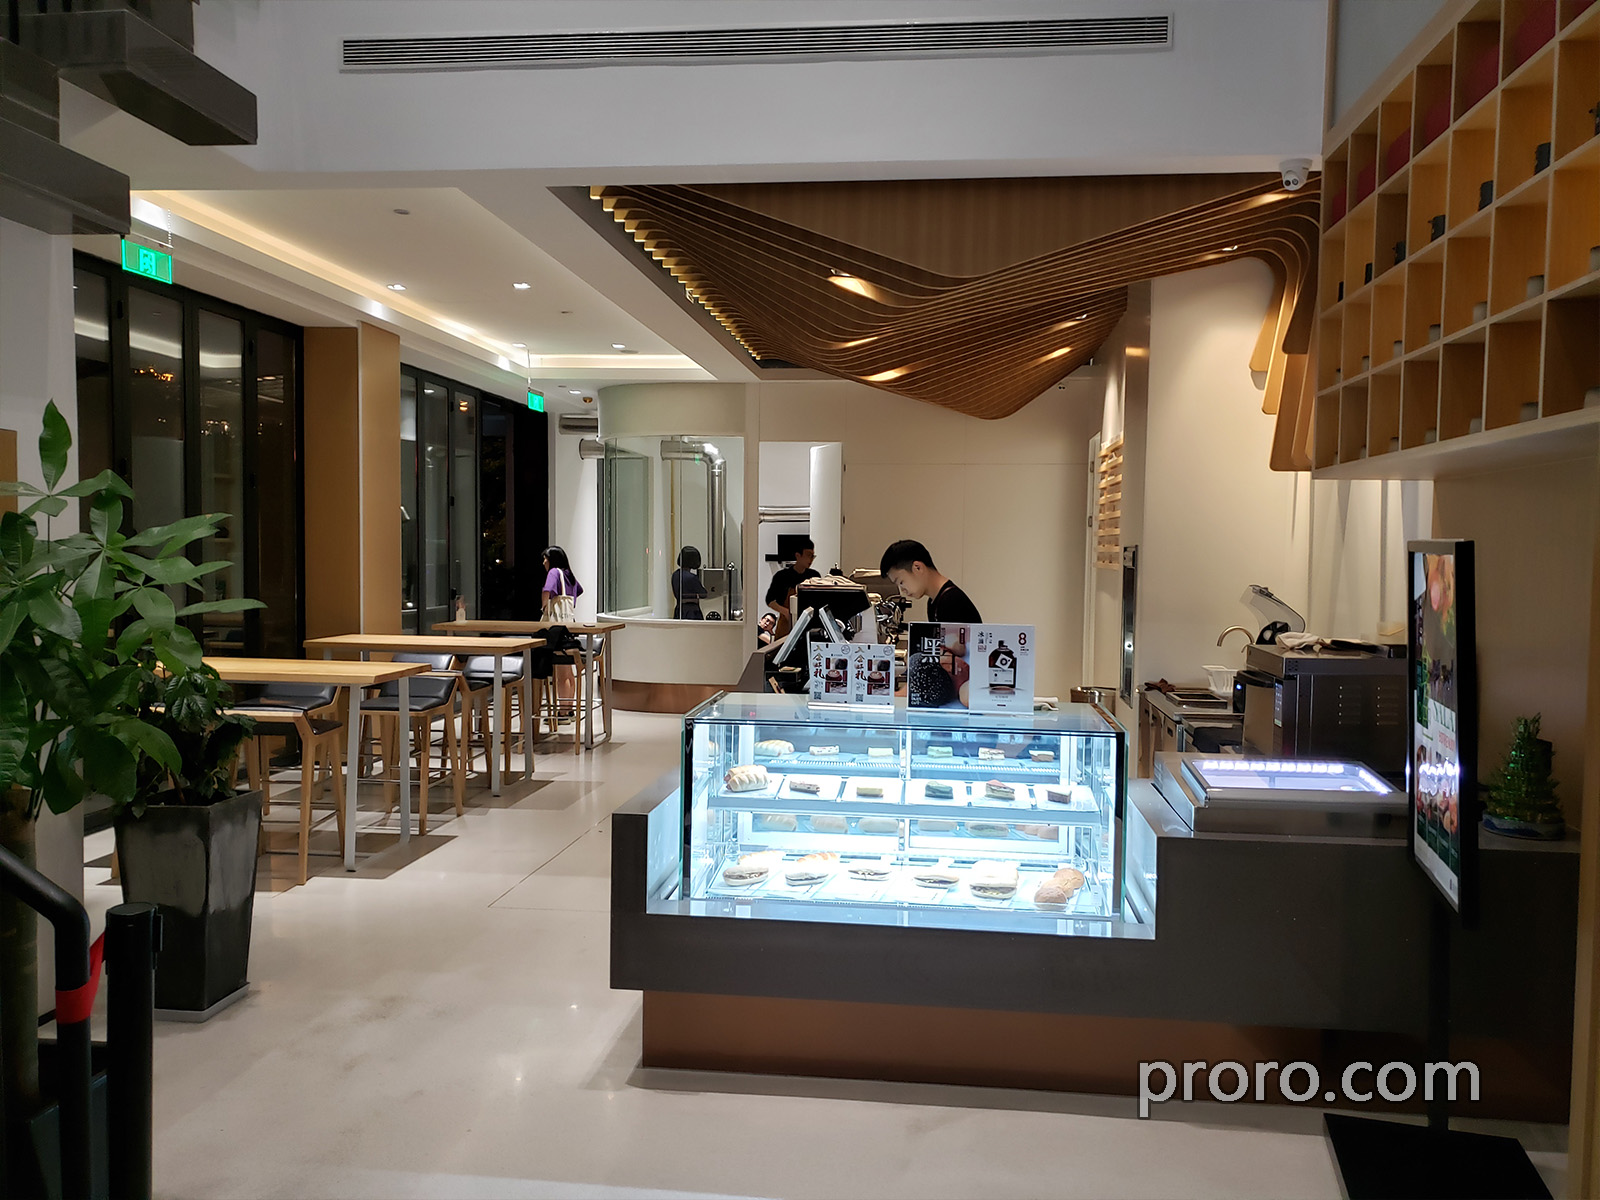 本次安装NBPKOREA消烟消味机的地址 : 上海市浦东新区浦城路367号一楼 逗馆咖啡。